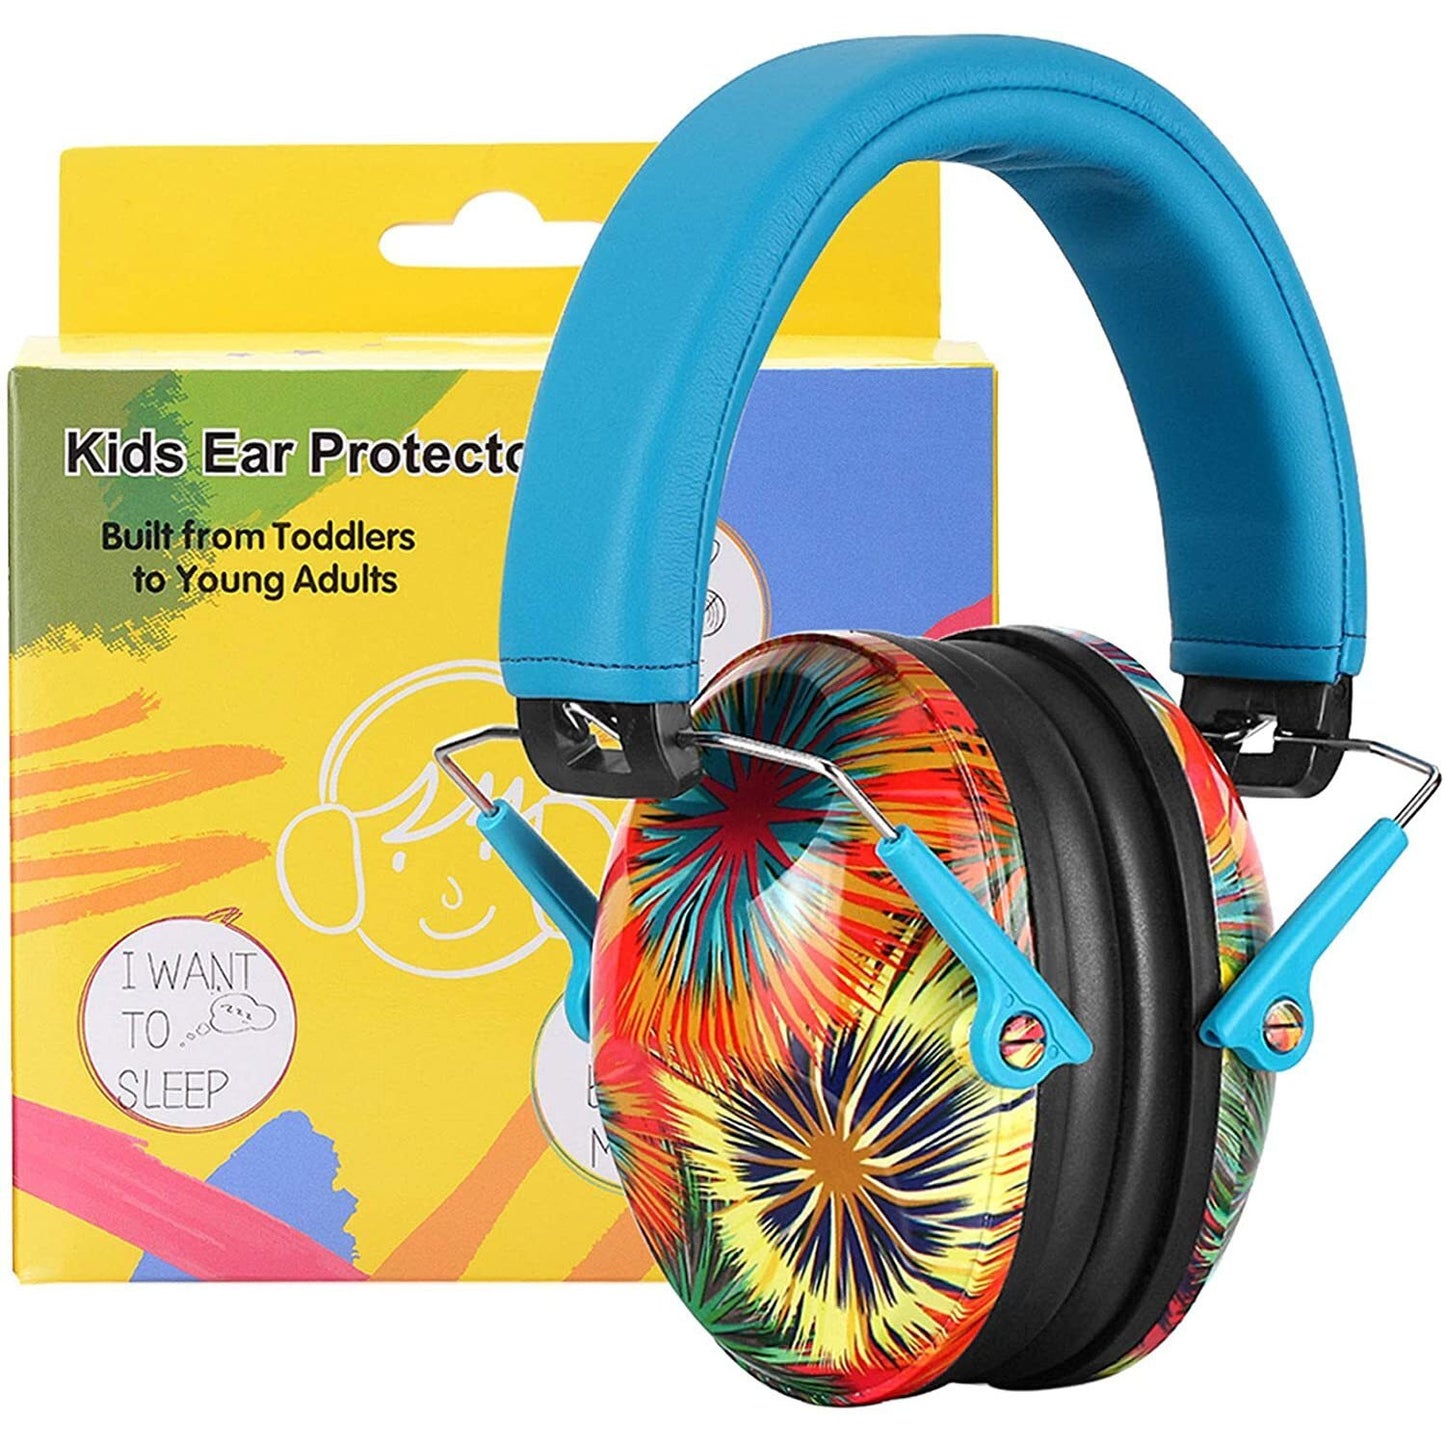 Epicshot Epicshot Kids Ear Protection Safety Adjustable Ear Muffs - Nrr 25Db Firework Color #em032 Cornflower Blue